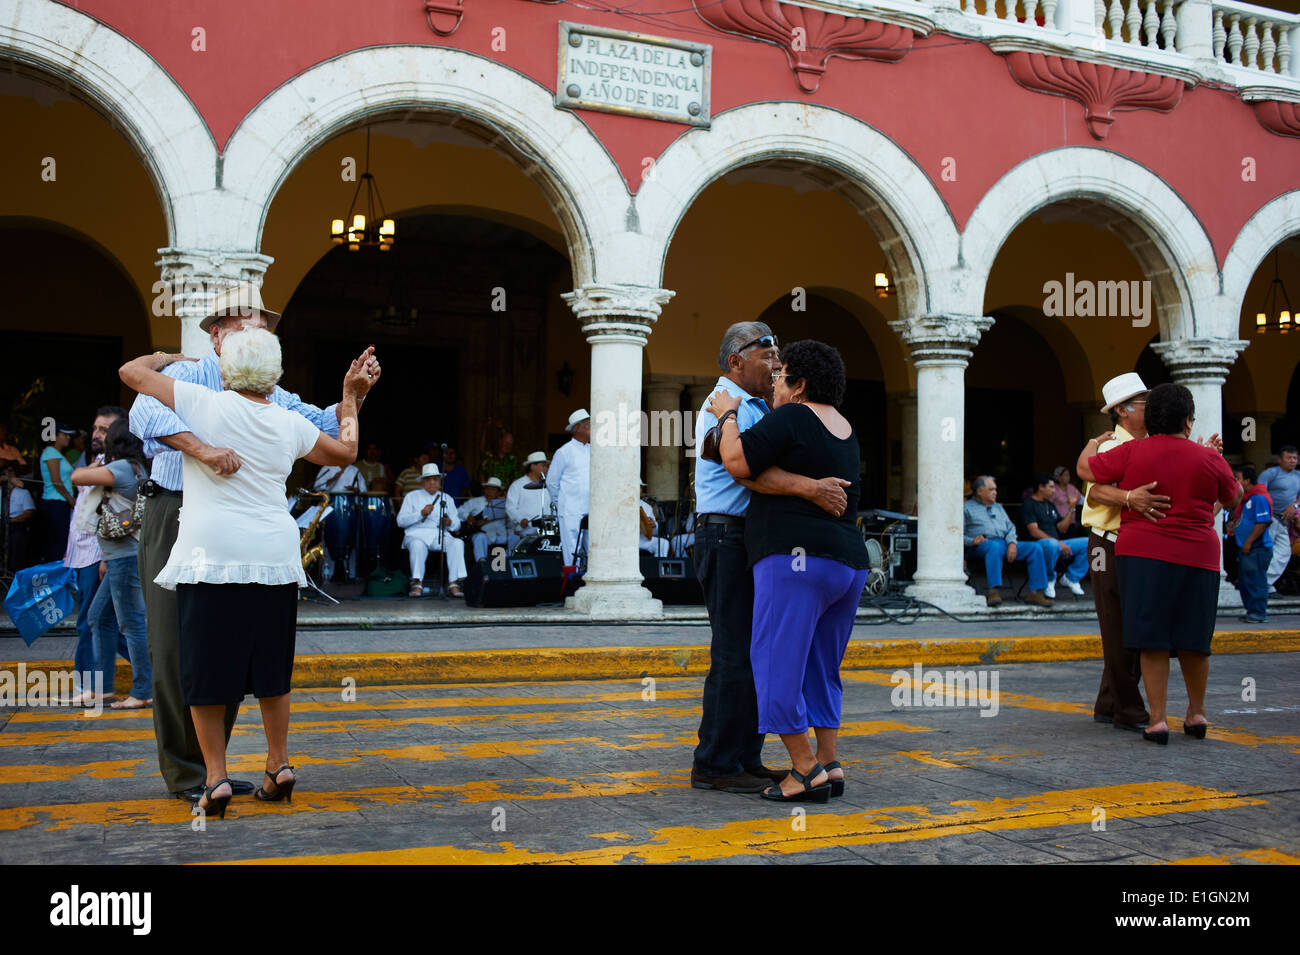 Le Mexique, l'état du Yucatan, Merida, capitale du Yucatan, square de l'indépendance, Palais municipal, danseurs et musiciens mexicains Banque D'Images